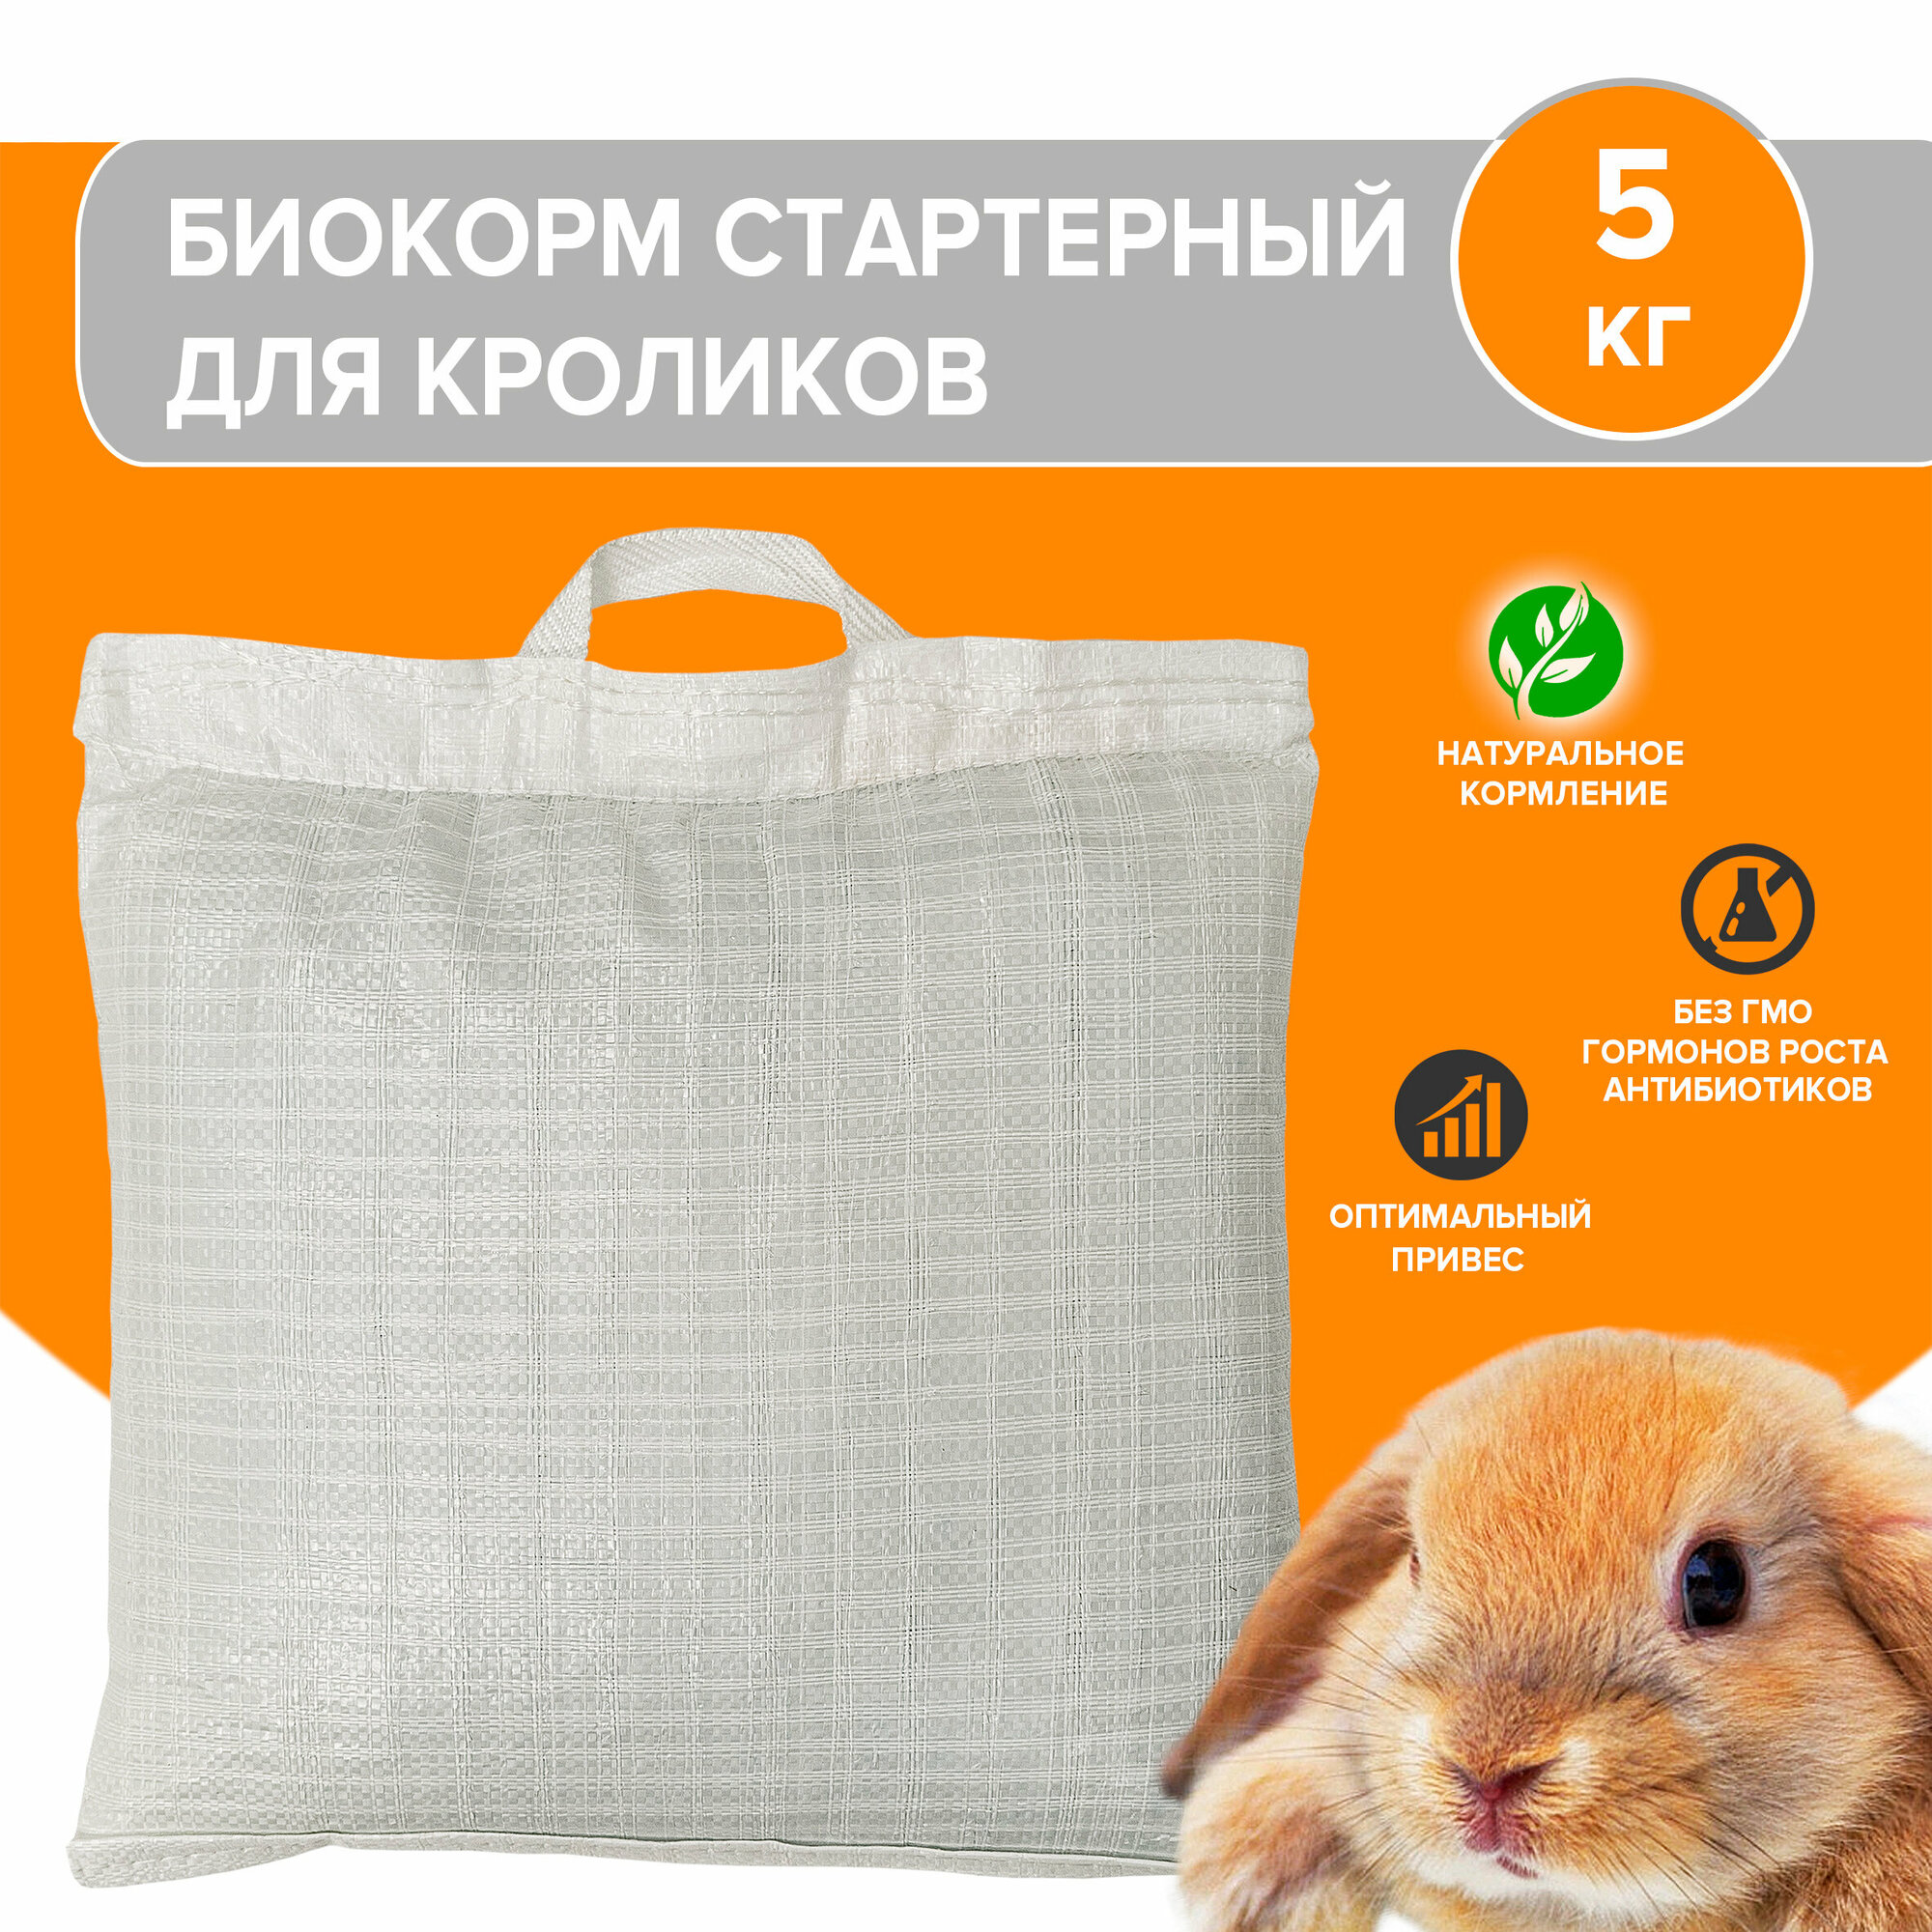 Биокорм стандарт / готовый корм для кроликов 5 кг